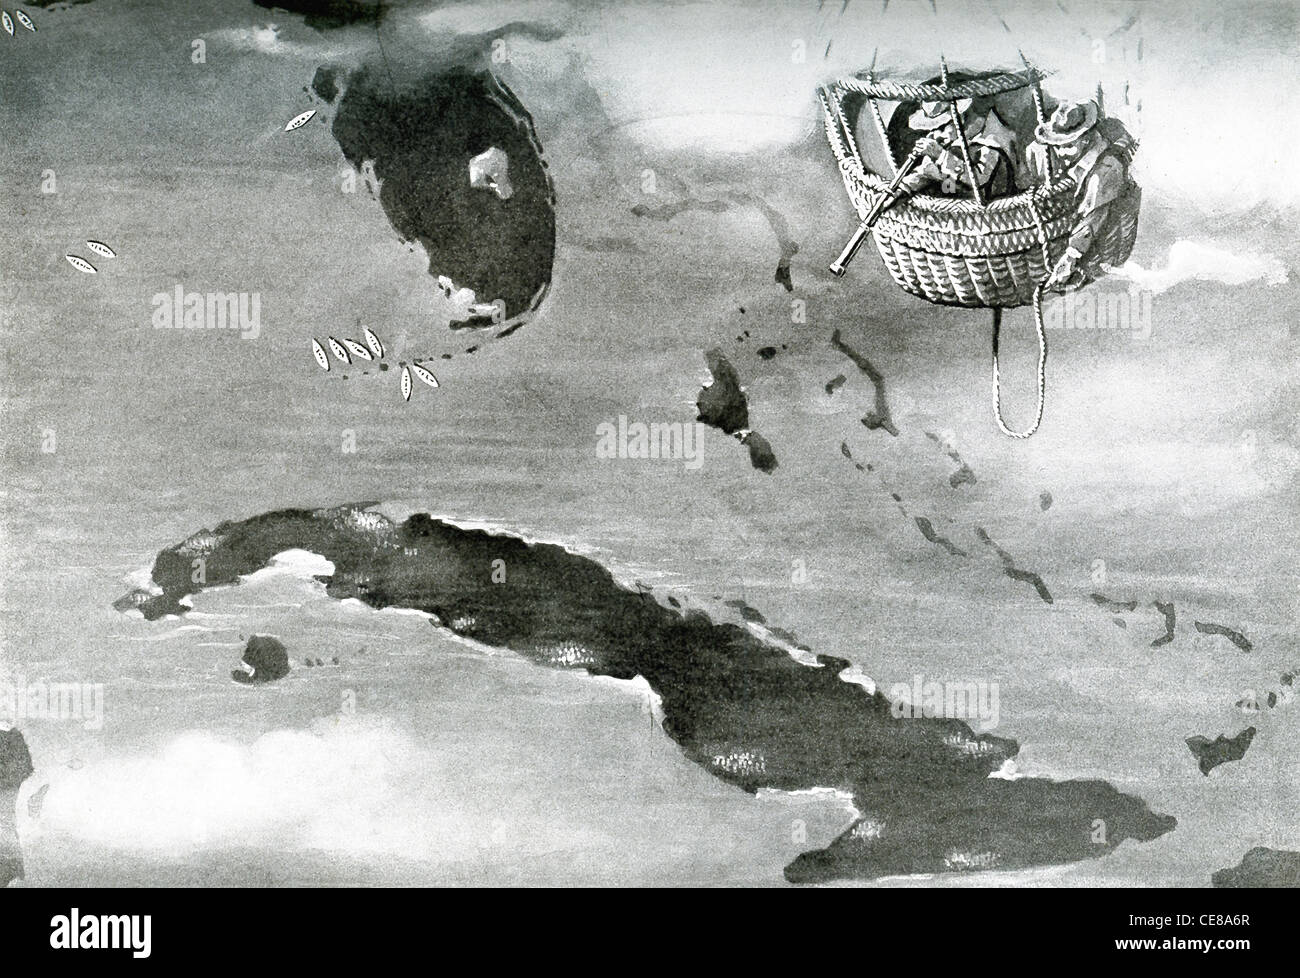 Les Américains utilisent un ballon de guerre pour vérifier les positions de la côte sud de la Floride, l'île de Cuba, et le golfe du Mexique. Banque D'Images